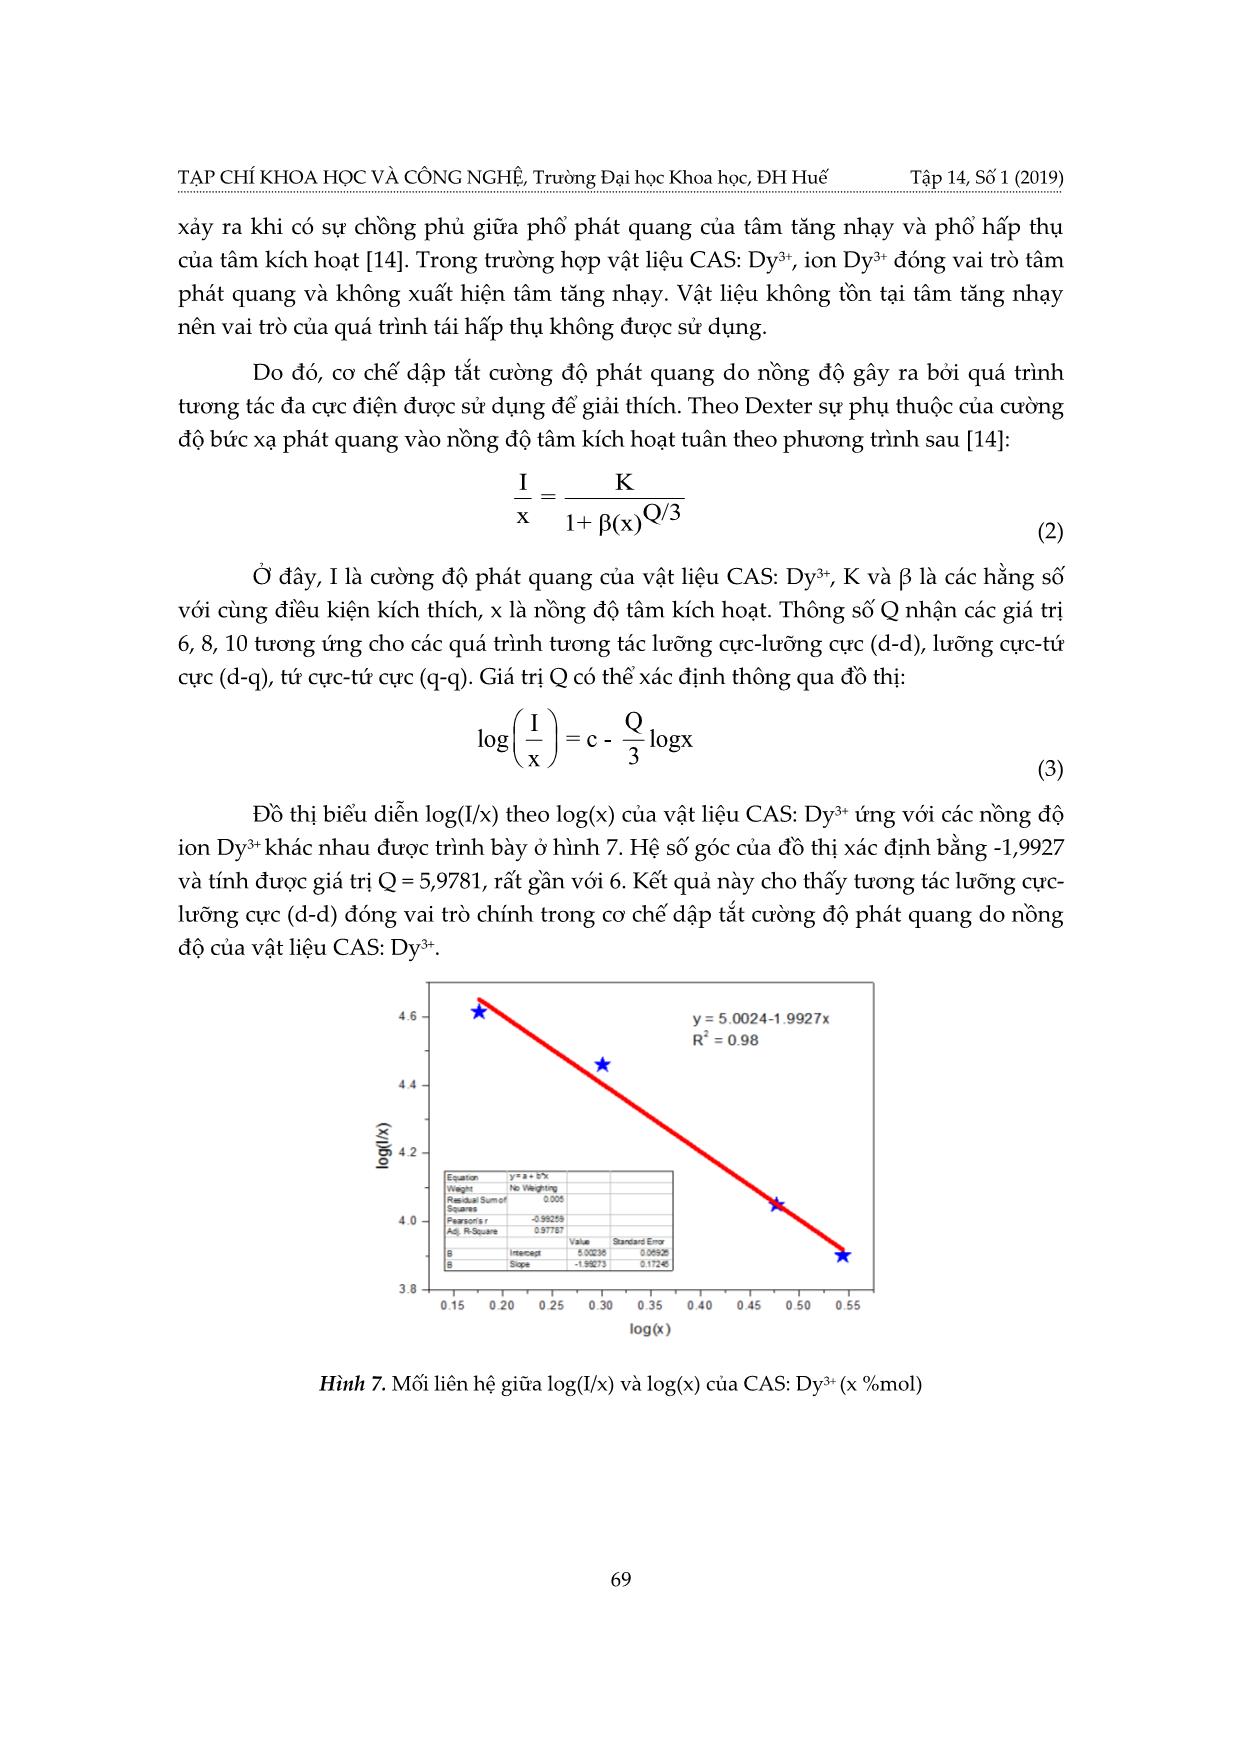 Cơ chế phát quang của ion Dy³+ trong mạng nền Ca₂Al₂SiO⁷ trang 7